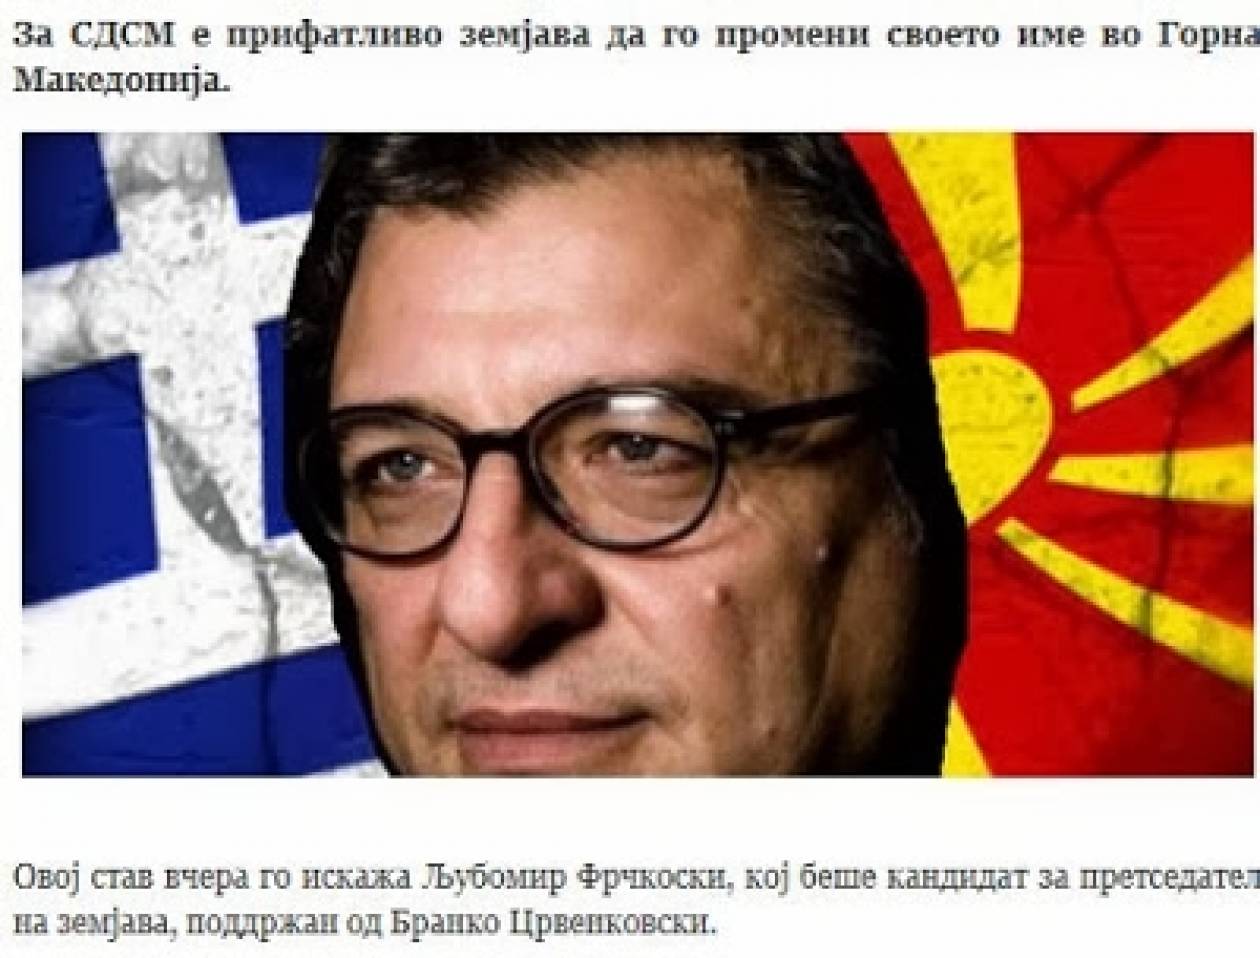 Σκόπια: Το σοσιαλδημοκρατικό κόμμα αποδέχεται το όνομα «Νέα Μακεδονία»